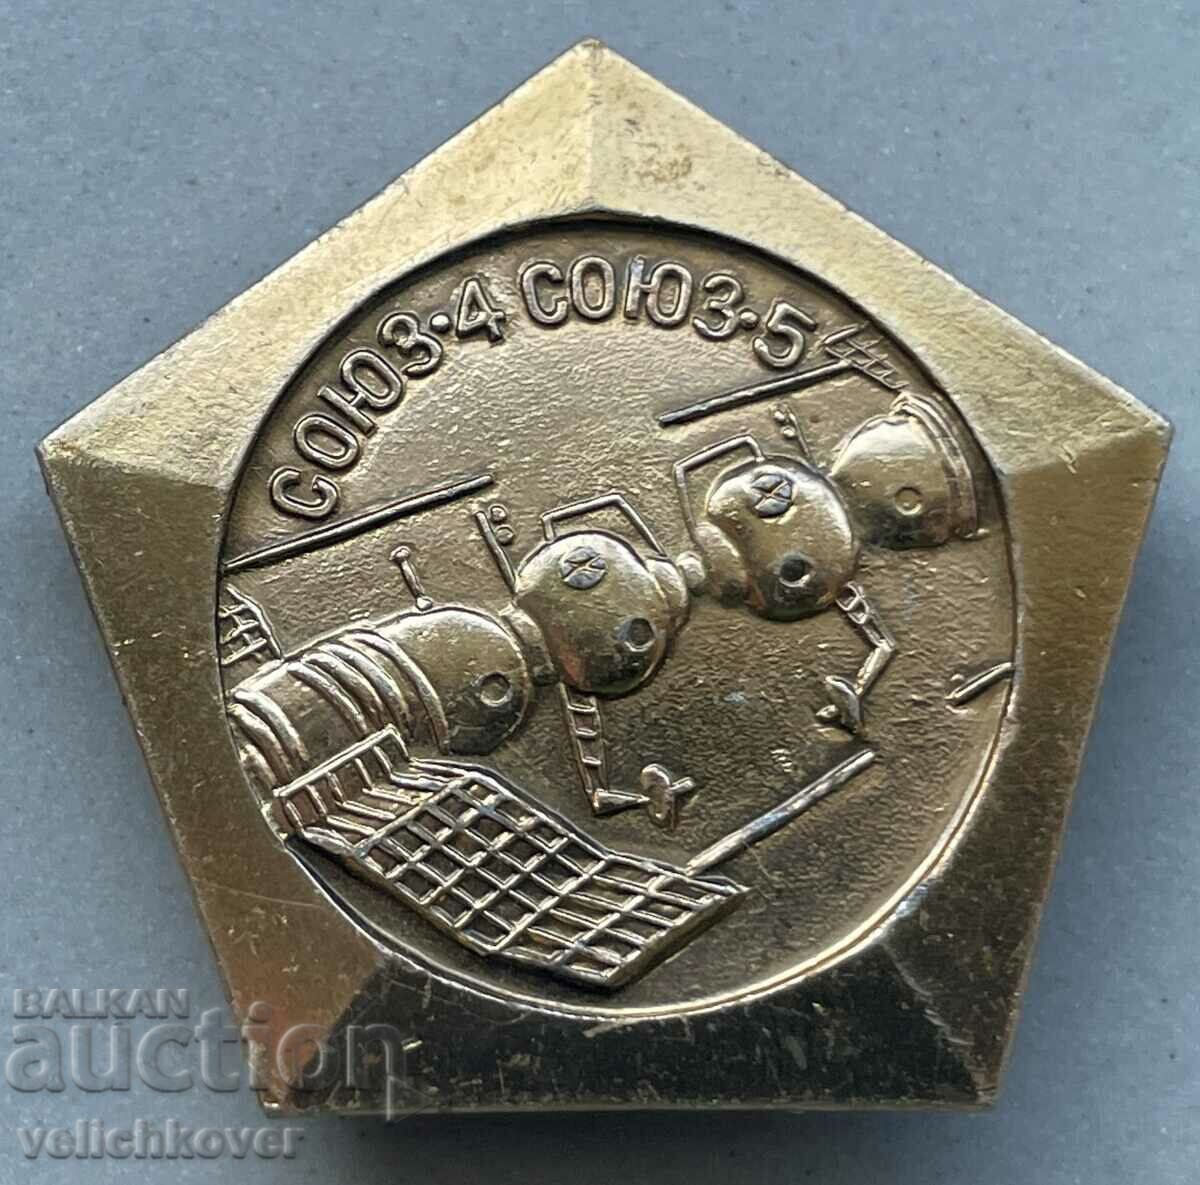 34017 СССР космически знак космически апарати съюз 4 и 5